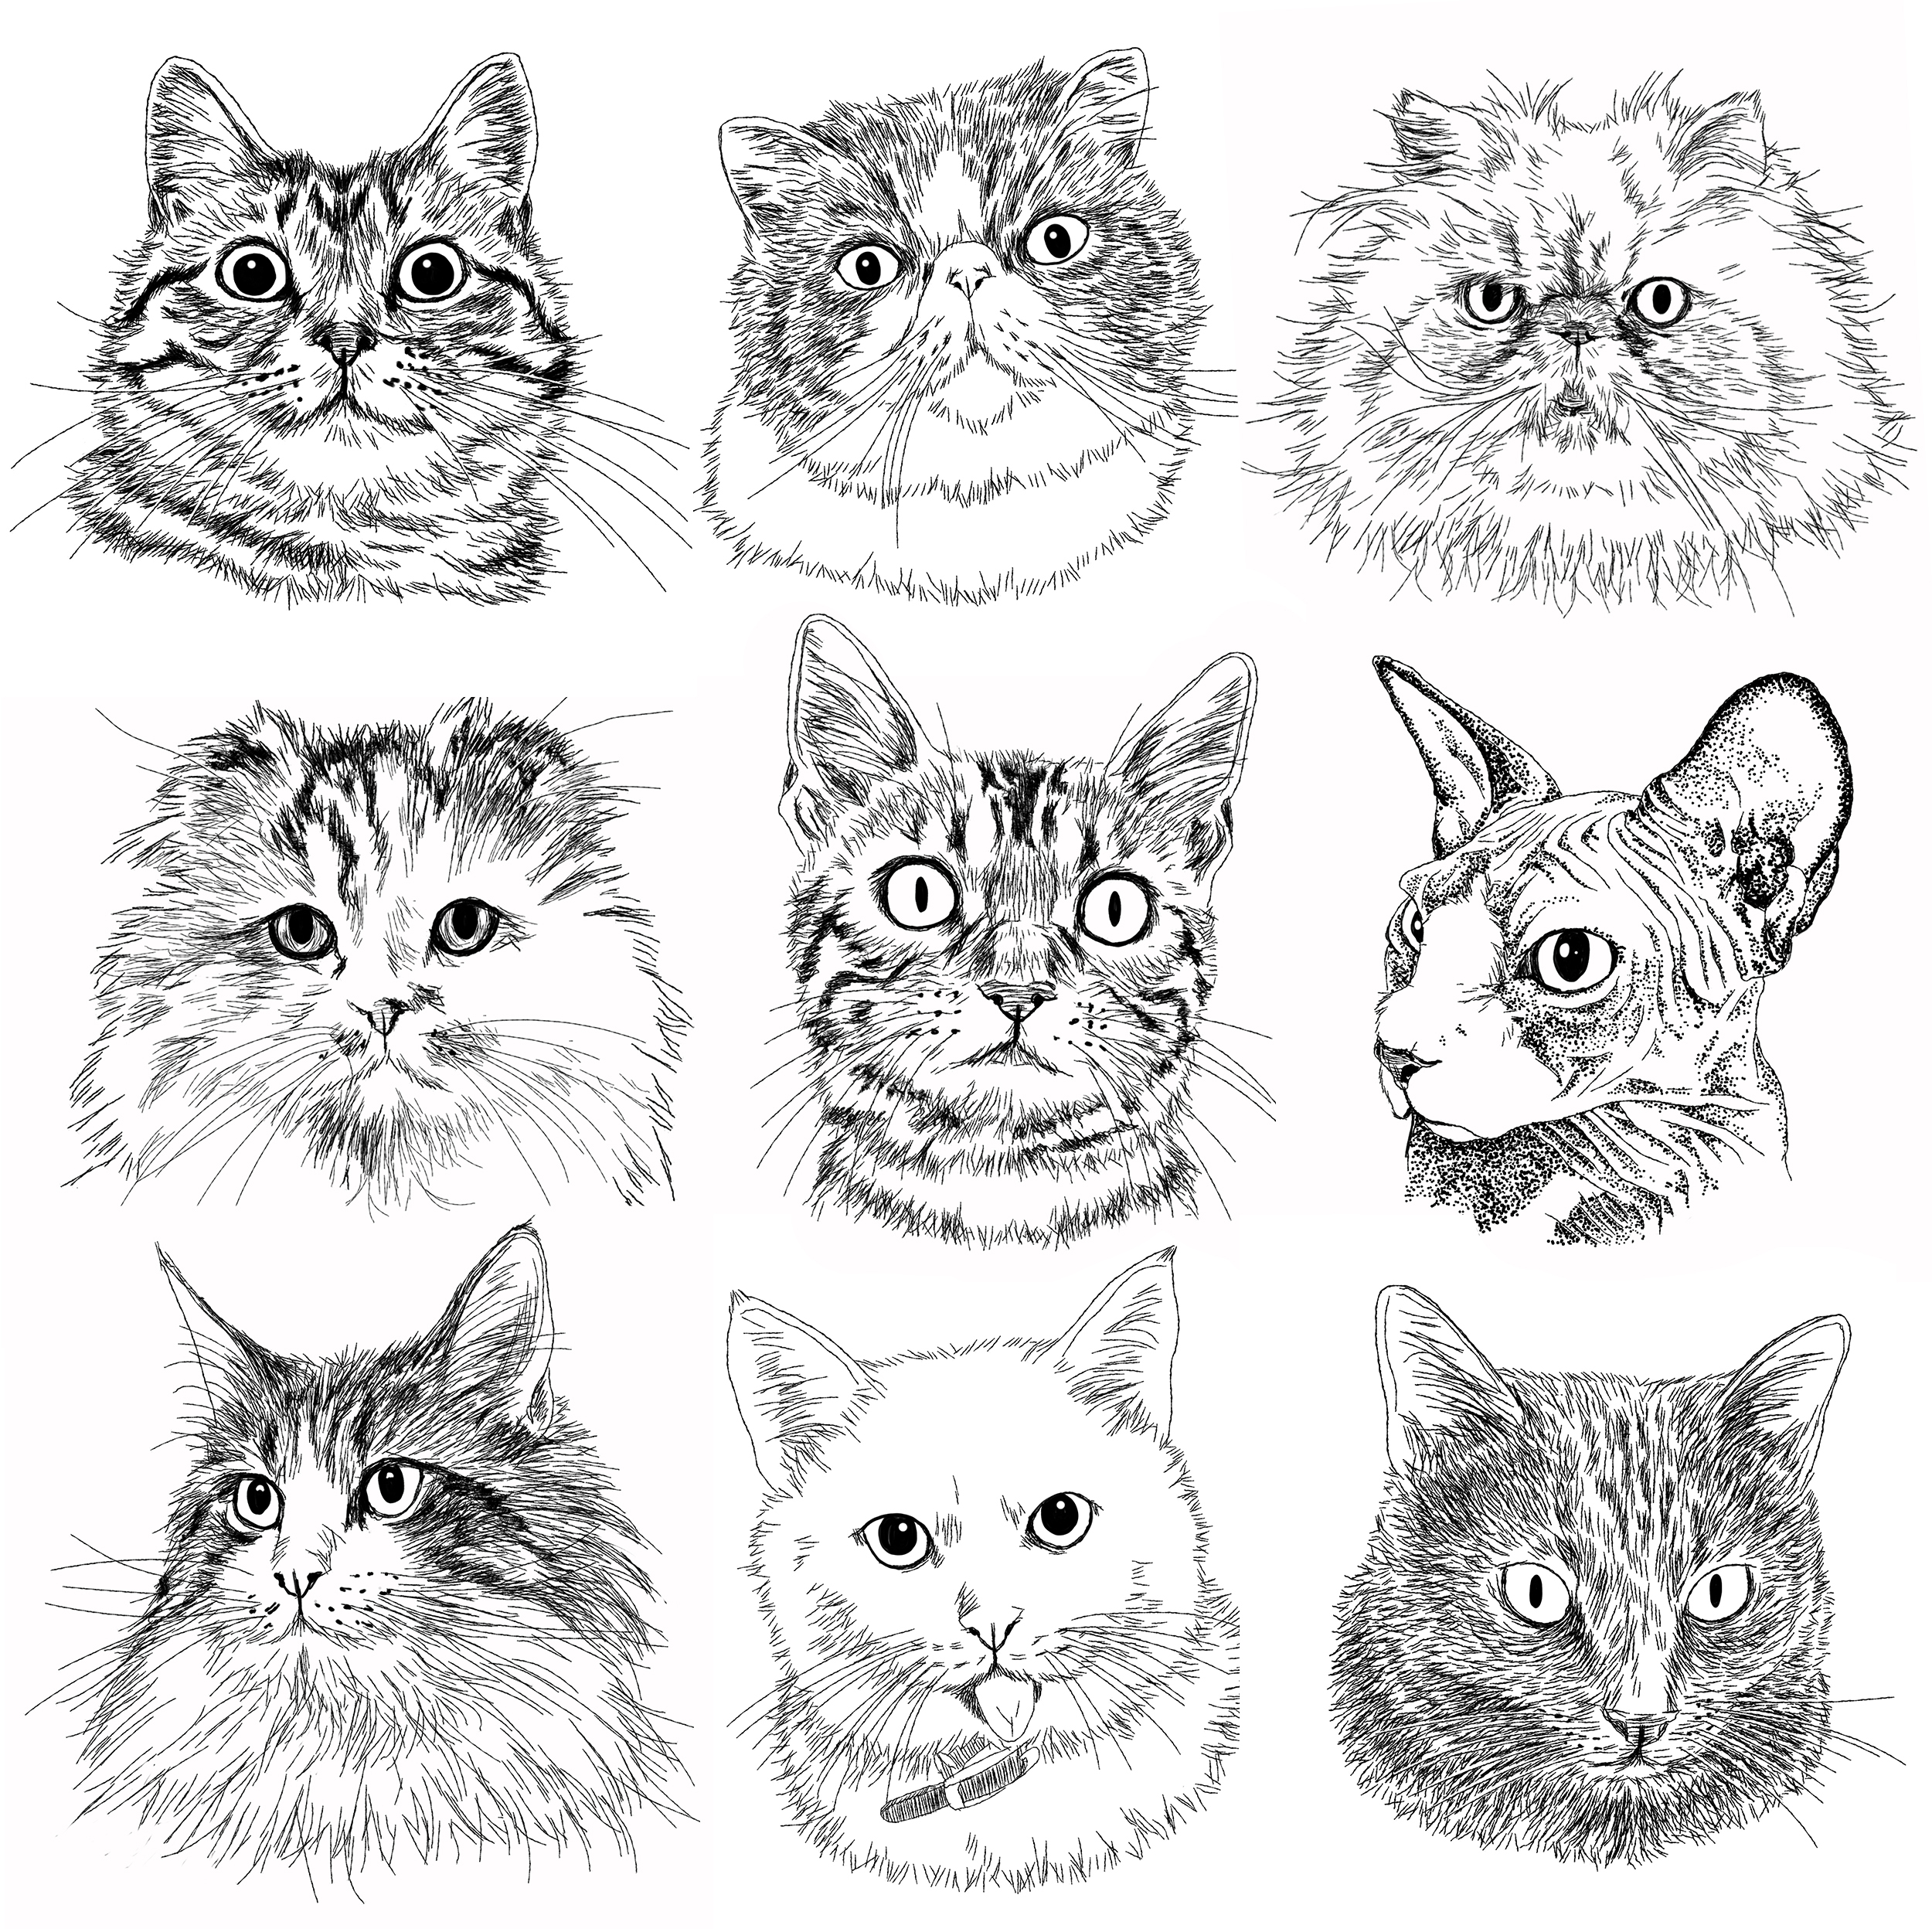 猫の手描きイラスト 似顔絵 白黒 作成 顔のみ 動物 人間可 猫雑貨 グッズ通販 猫や動物イラスト 似顔絵作成 365cat Art